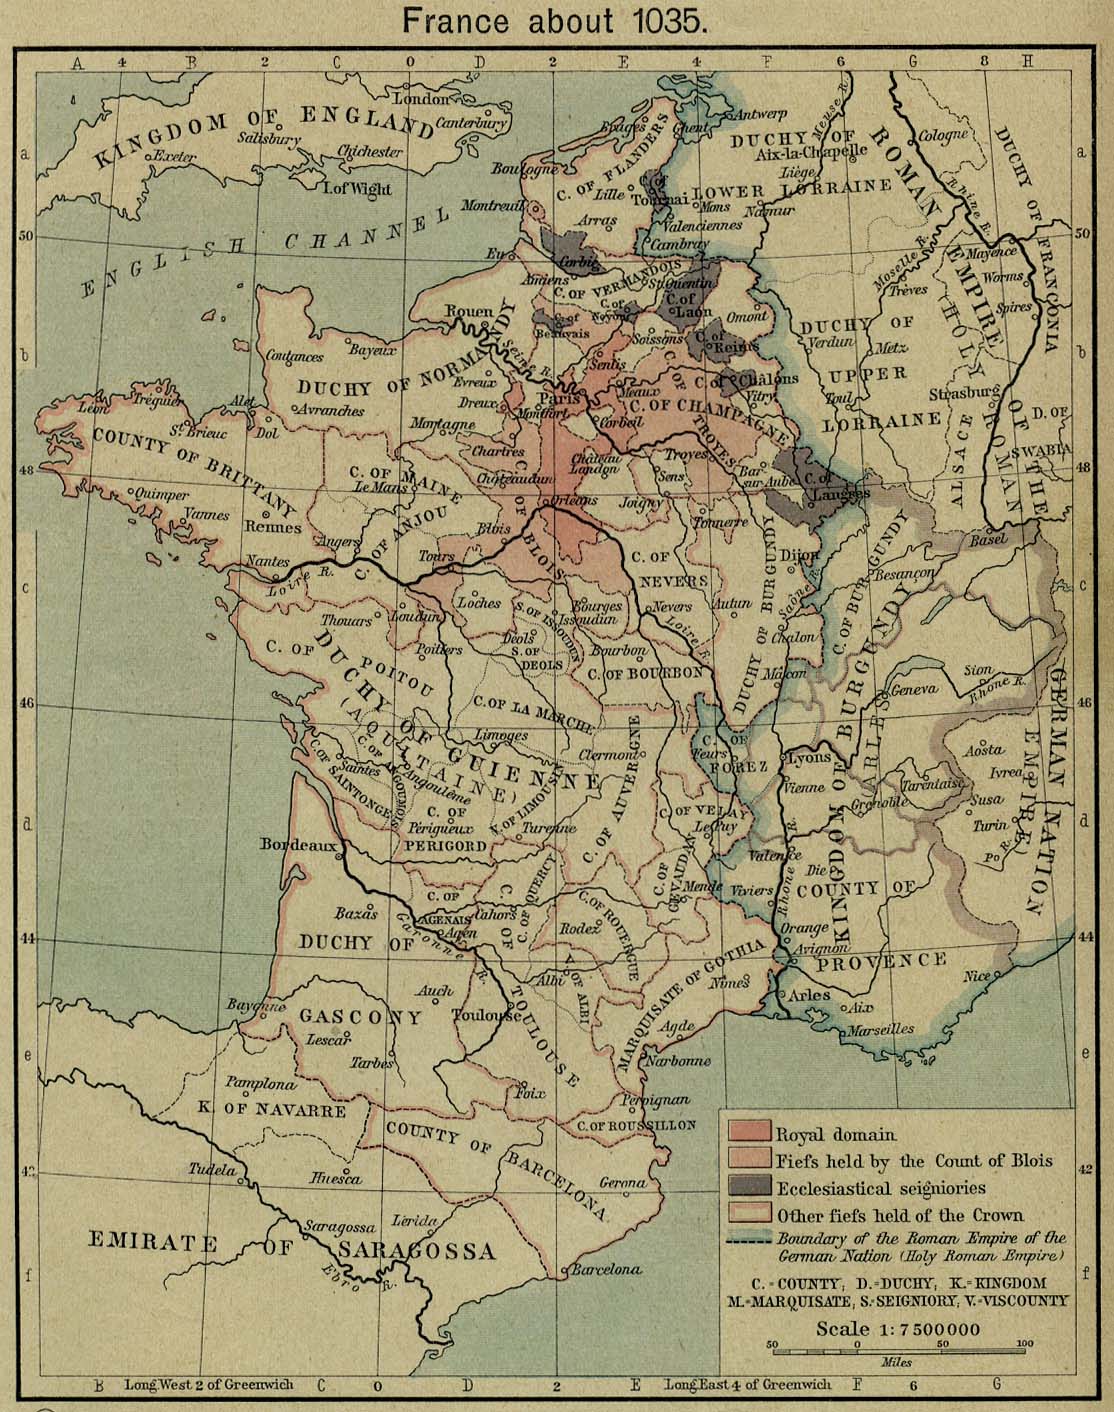 France c. 1035 C. E.